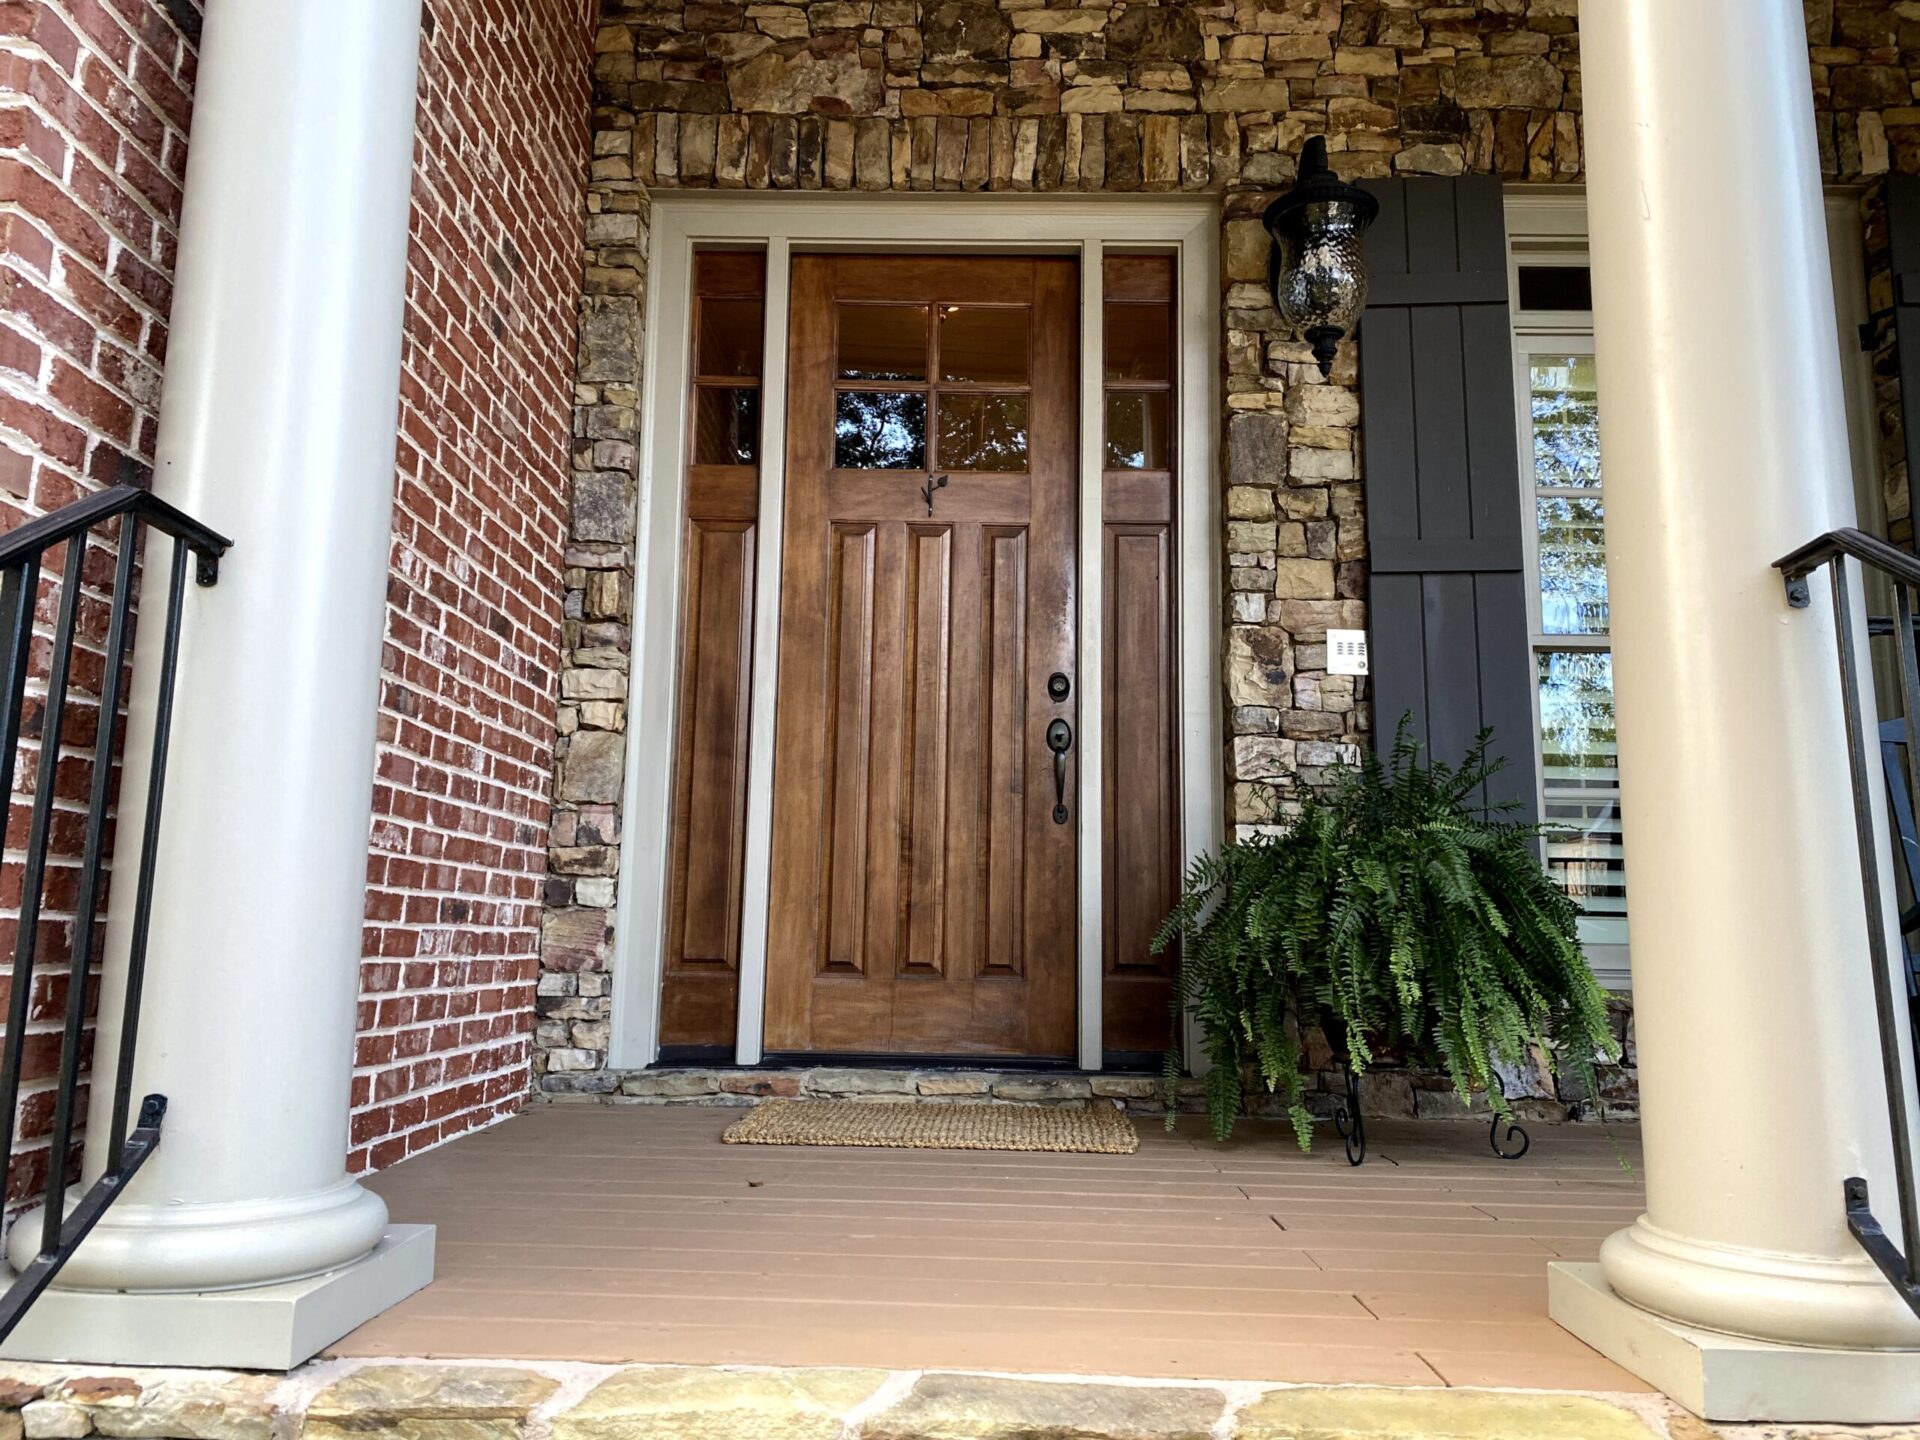 Doorway and deck